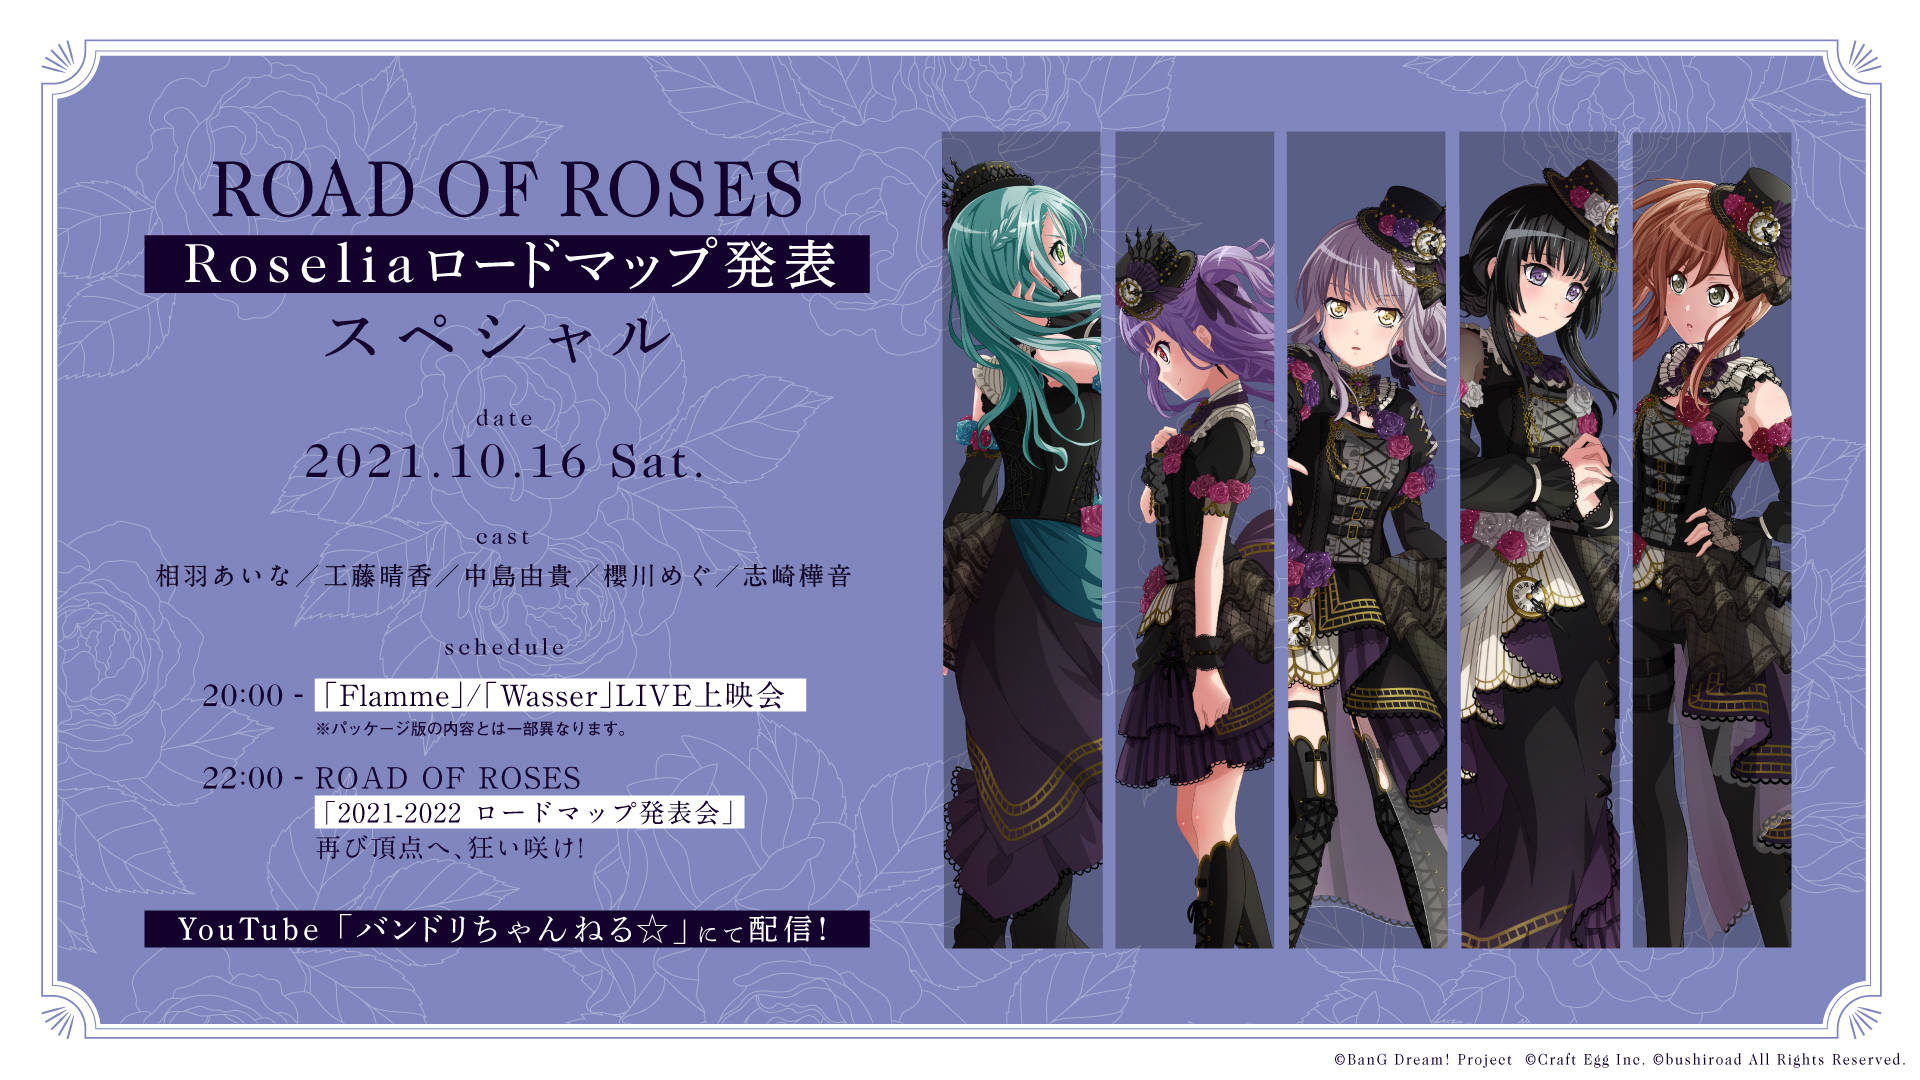 バンドリ より Roseliaの新情報発表会 Road Of Roses Roselia ロードマップ発表スペシャル 放送が決定 株式会社ブシロードのプレスリリース